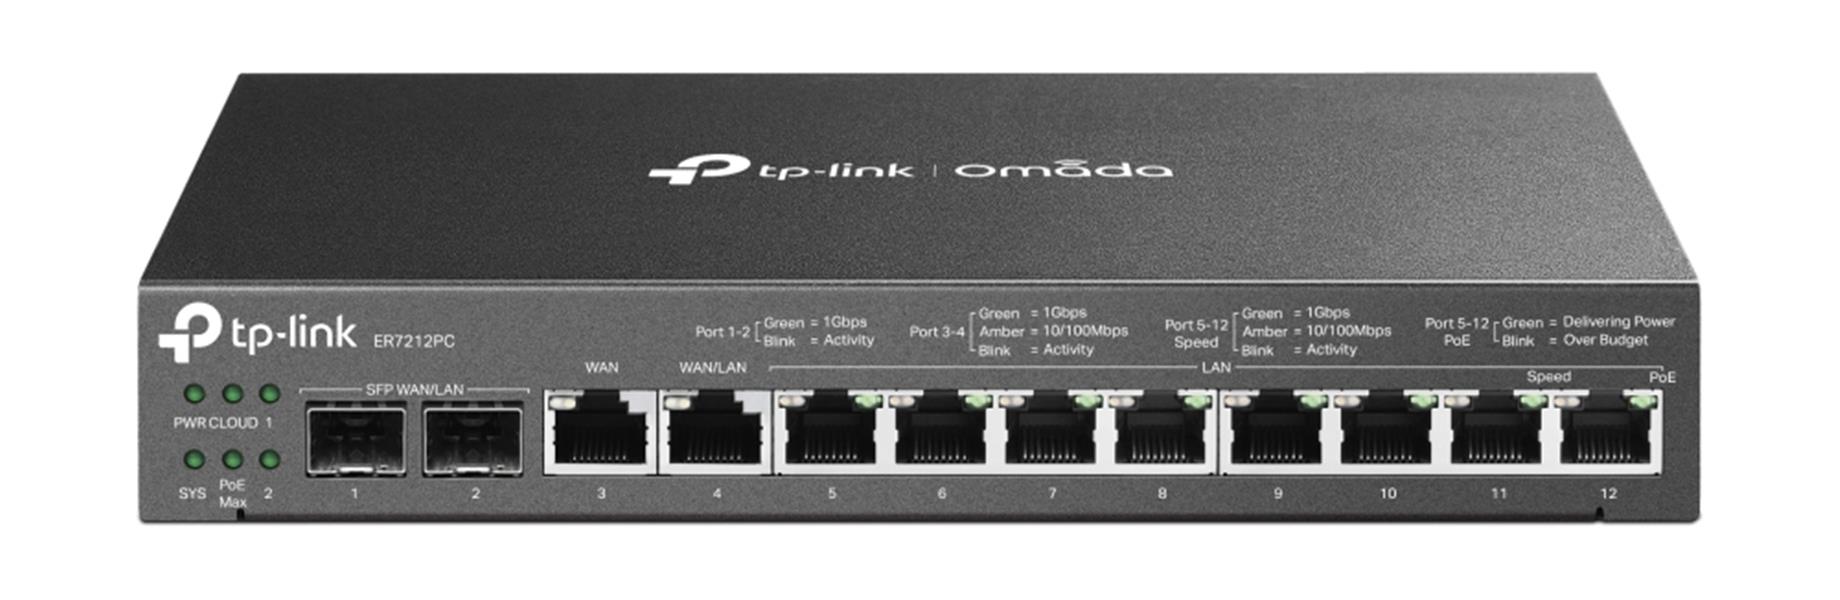 Omada 3-in-1 Gigabit VPN Router